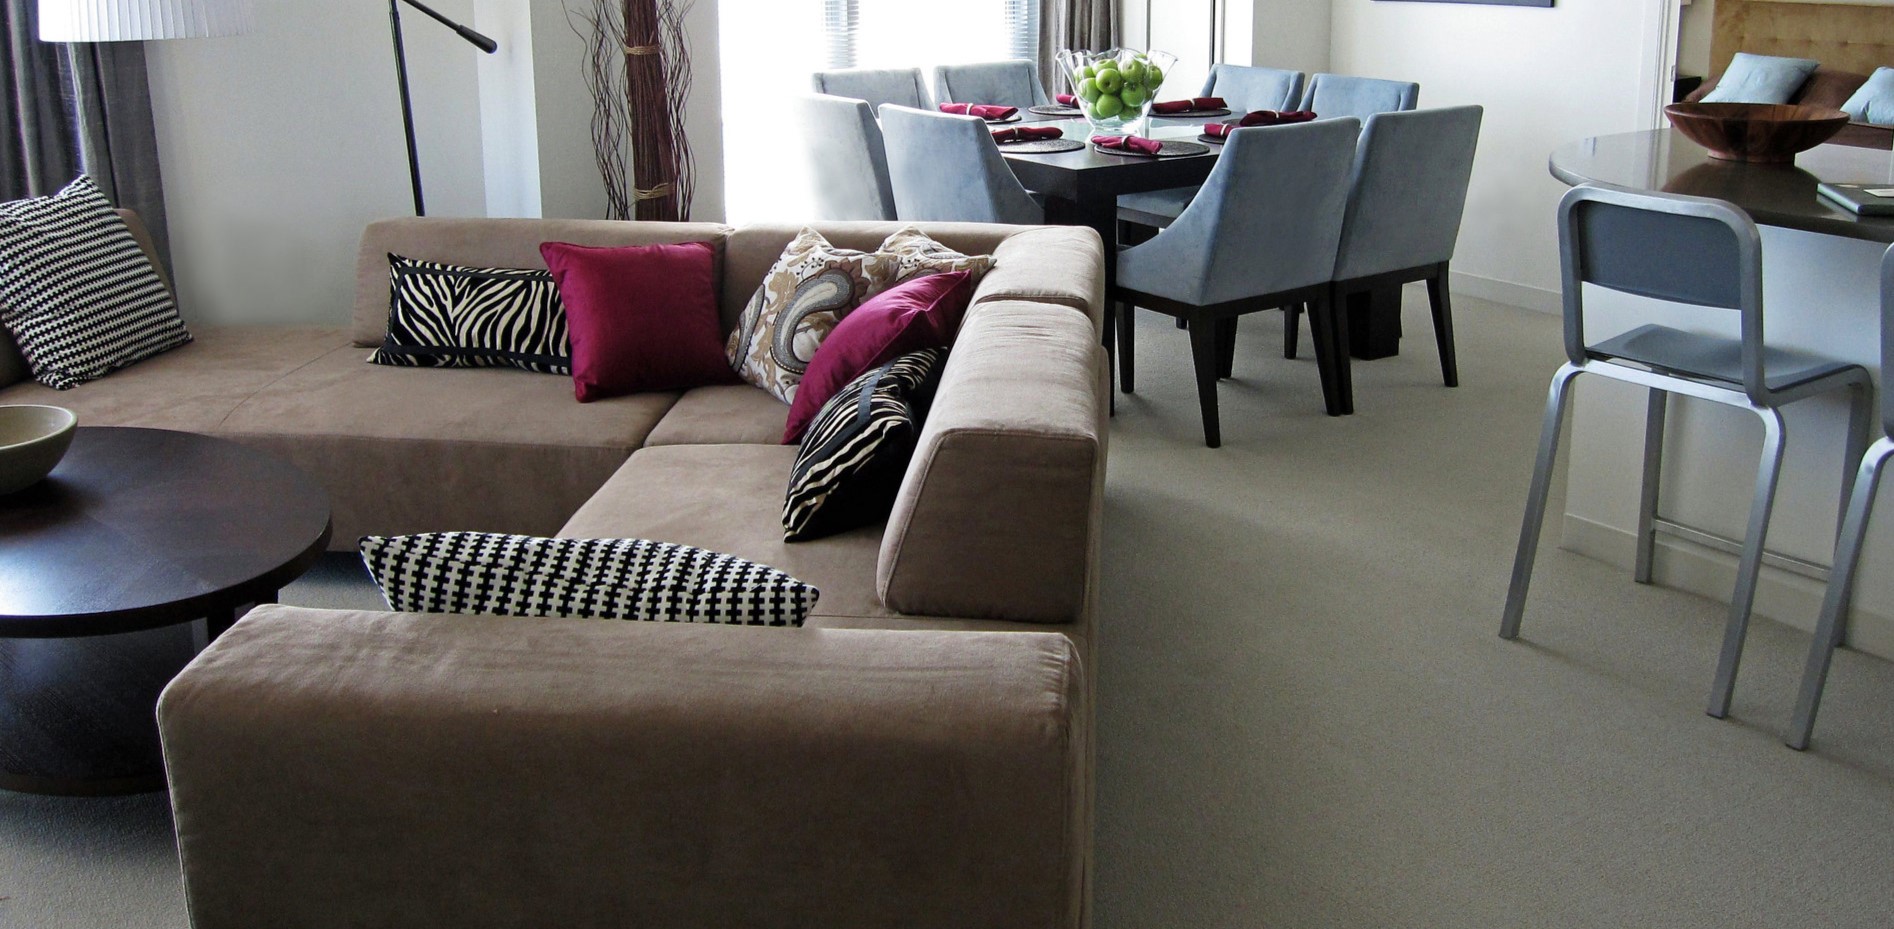 С помощью дивана можно отделить рабочую зону дома от кухни-столовой